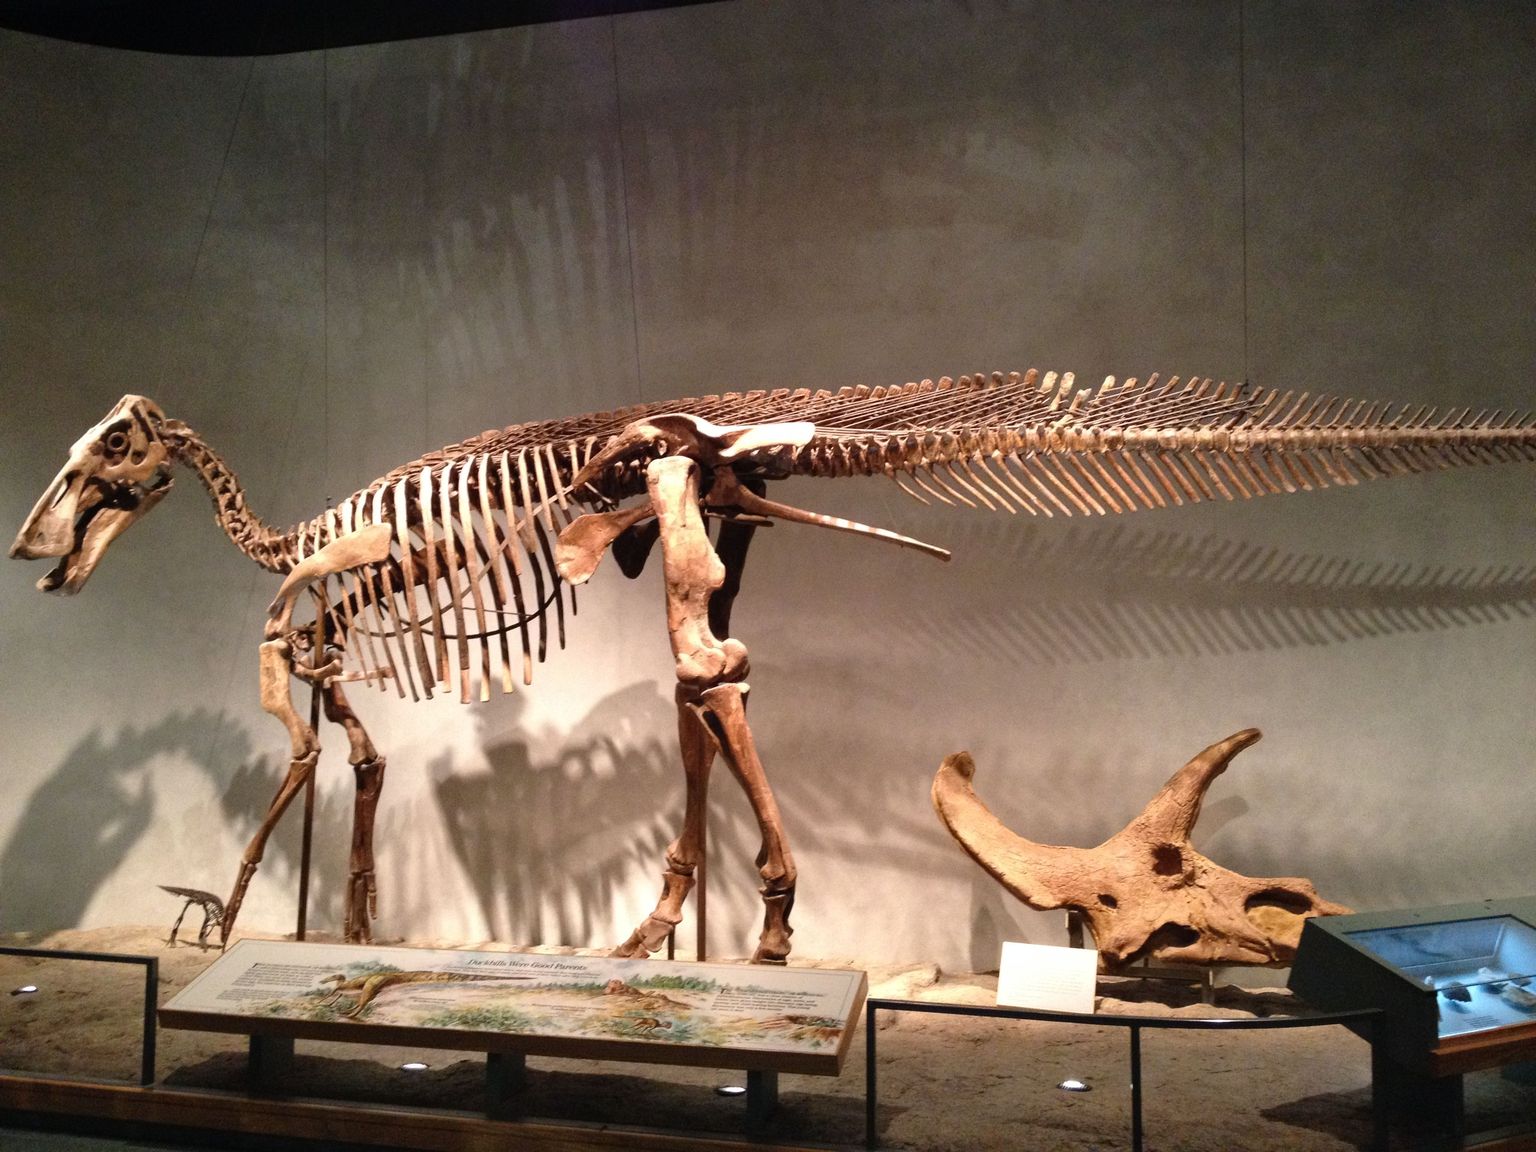 edmontosaurus